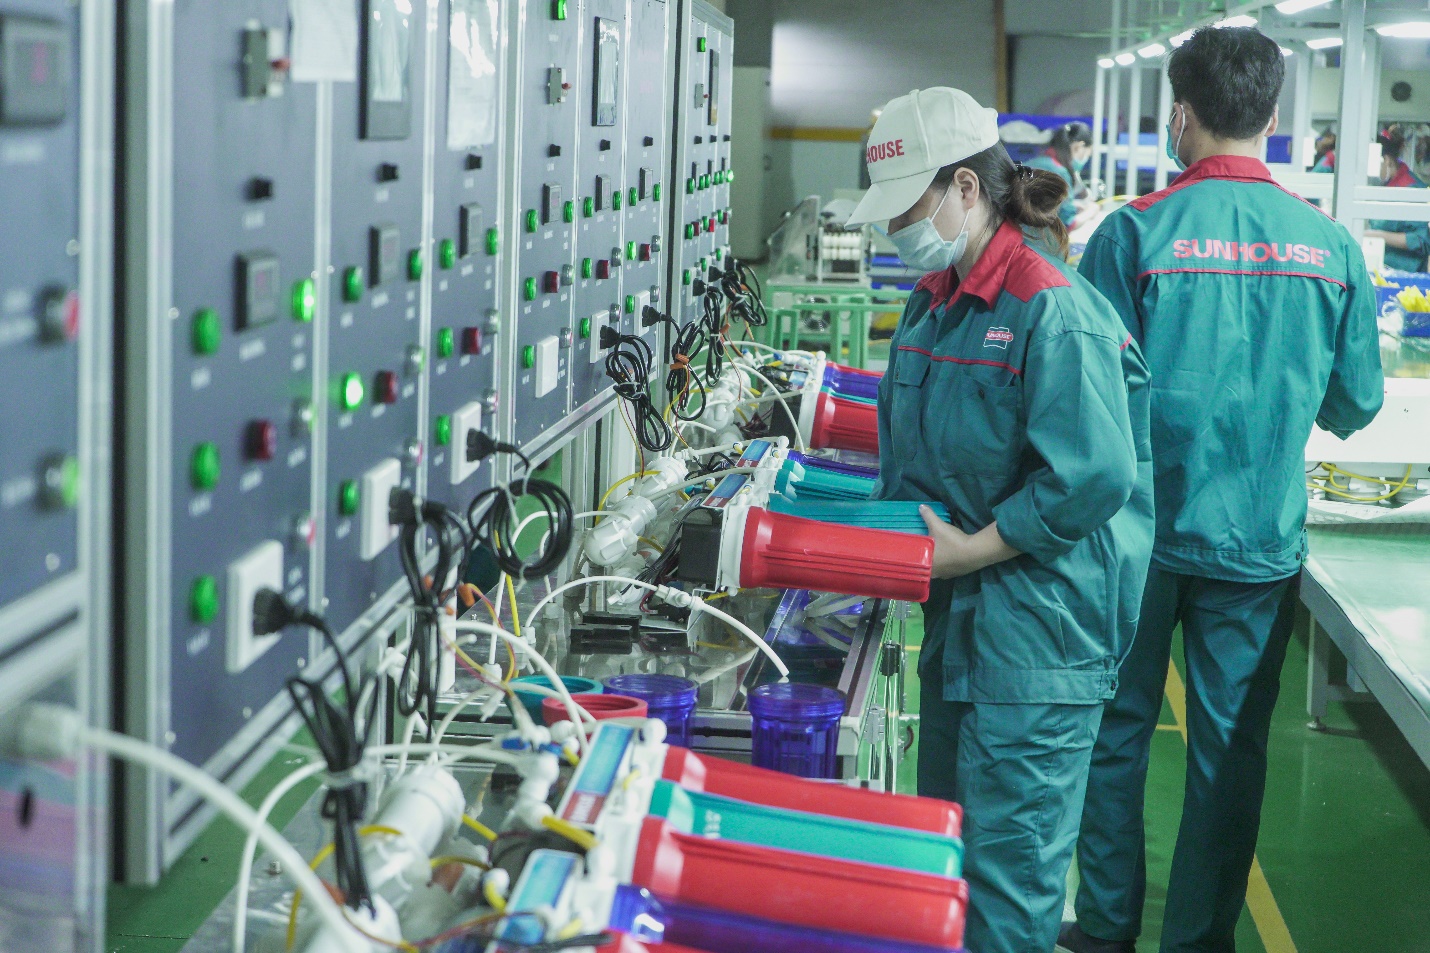 Nhà máy Sunhouse sản xuất máy lọc nước tinh khiết được yêu thích nhất năm 2022 - Ảnh 2.